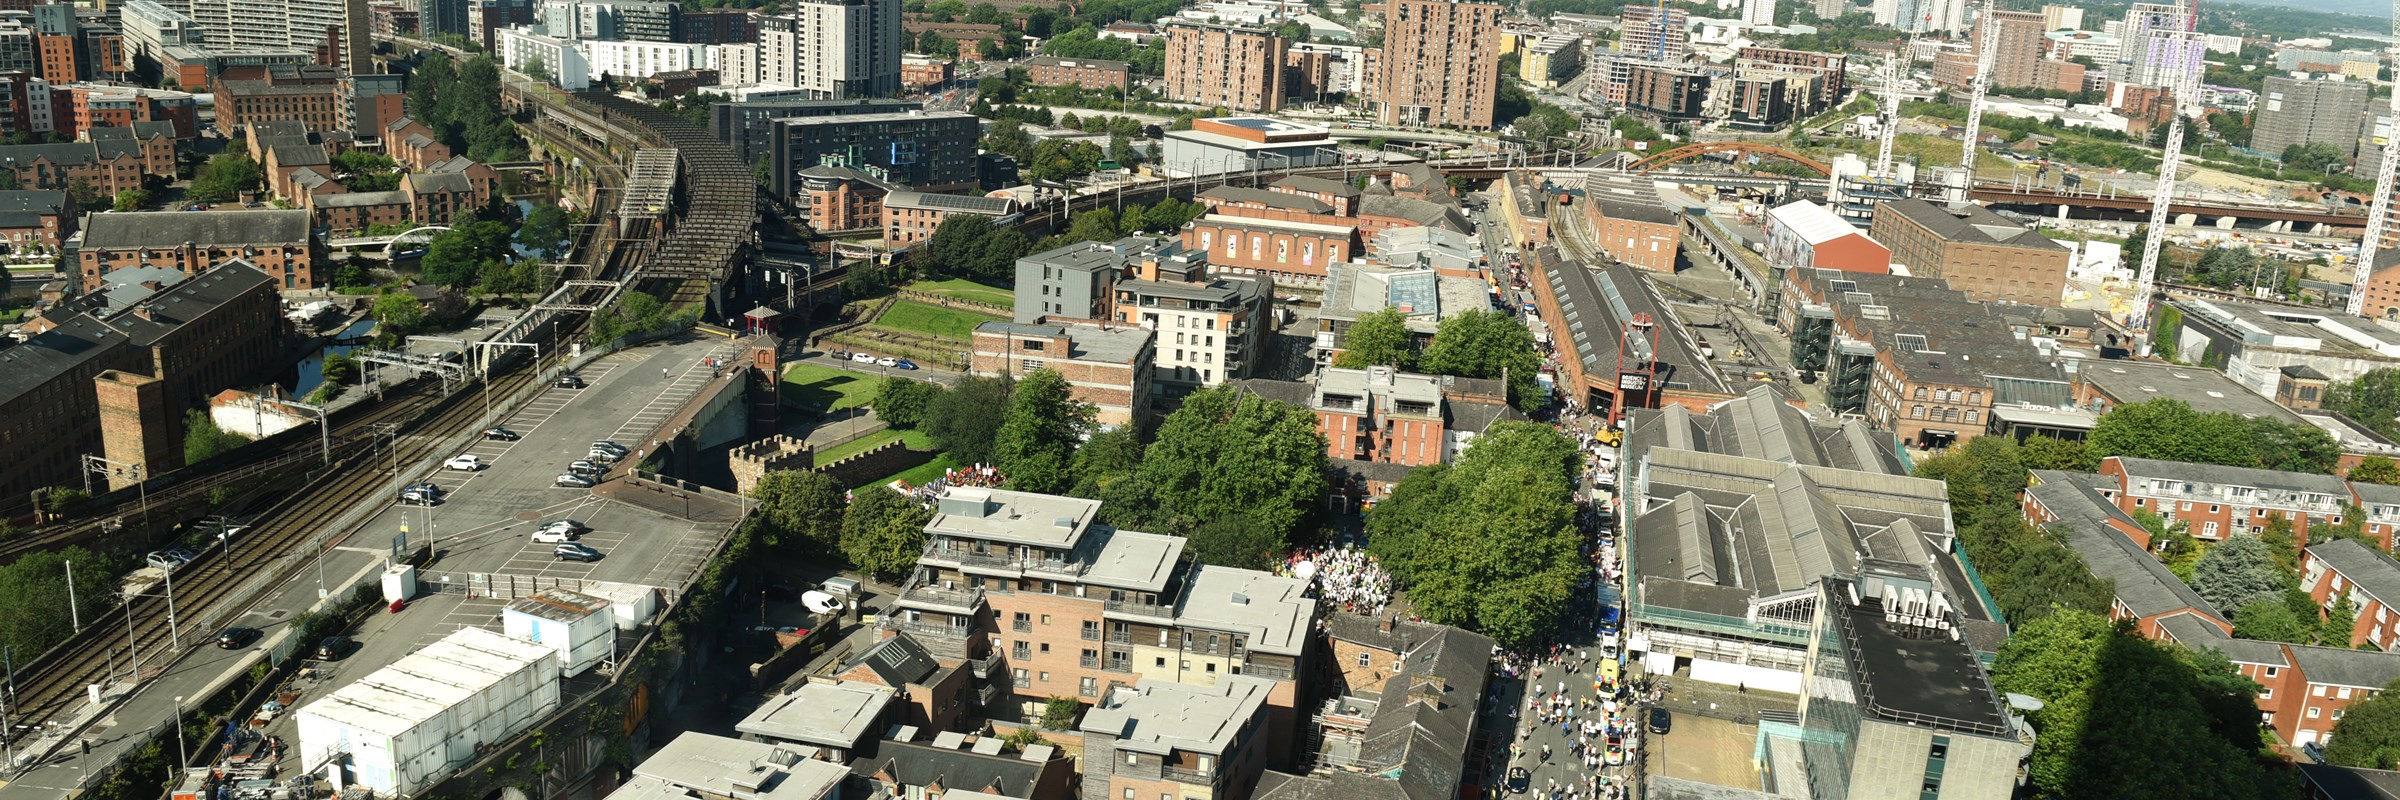 Manchester city centre landscape